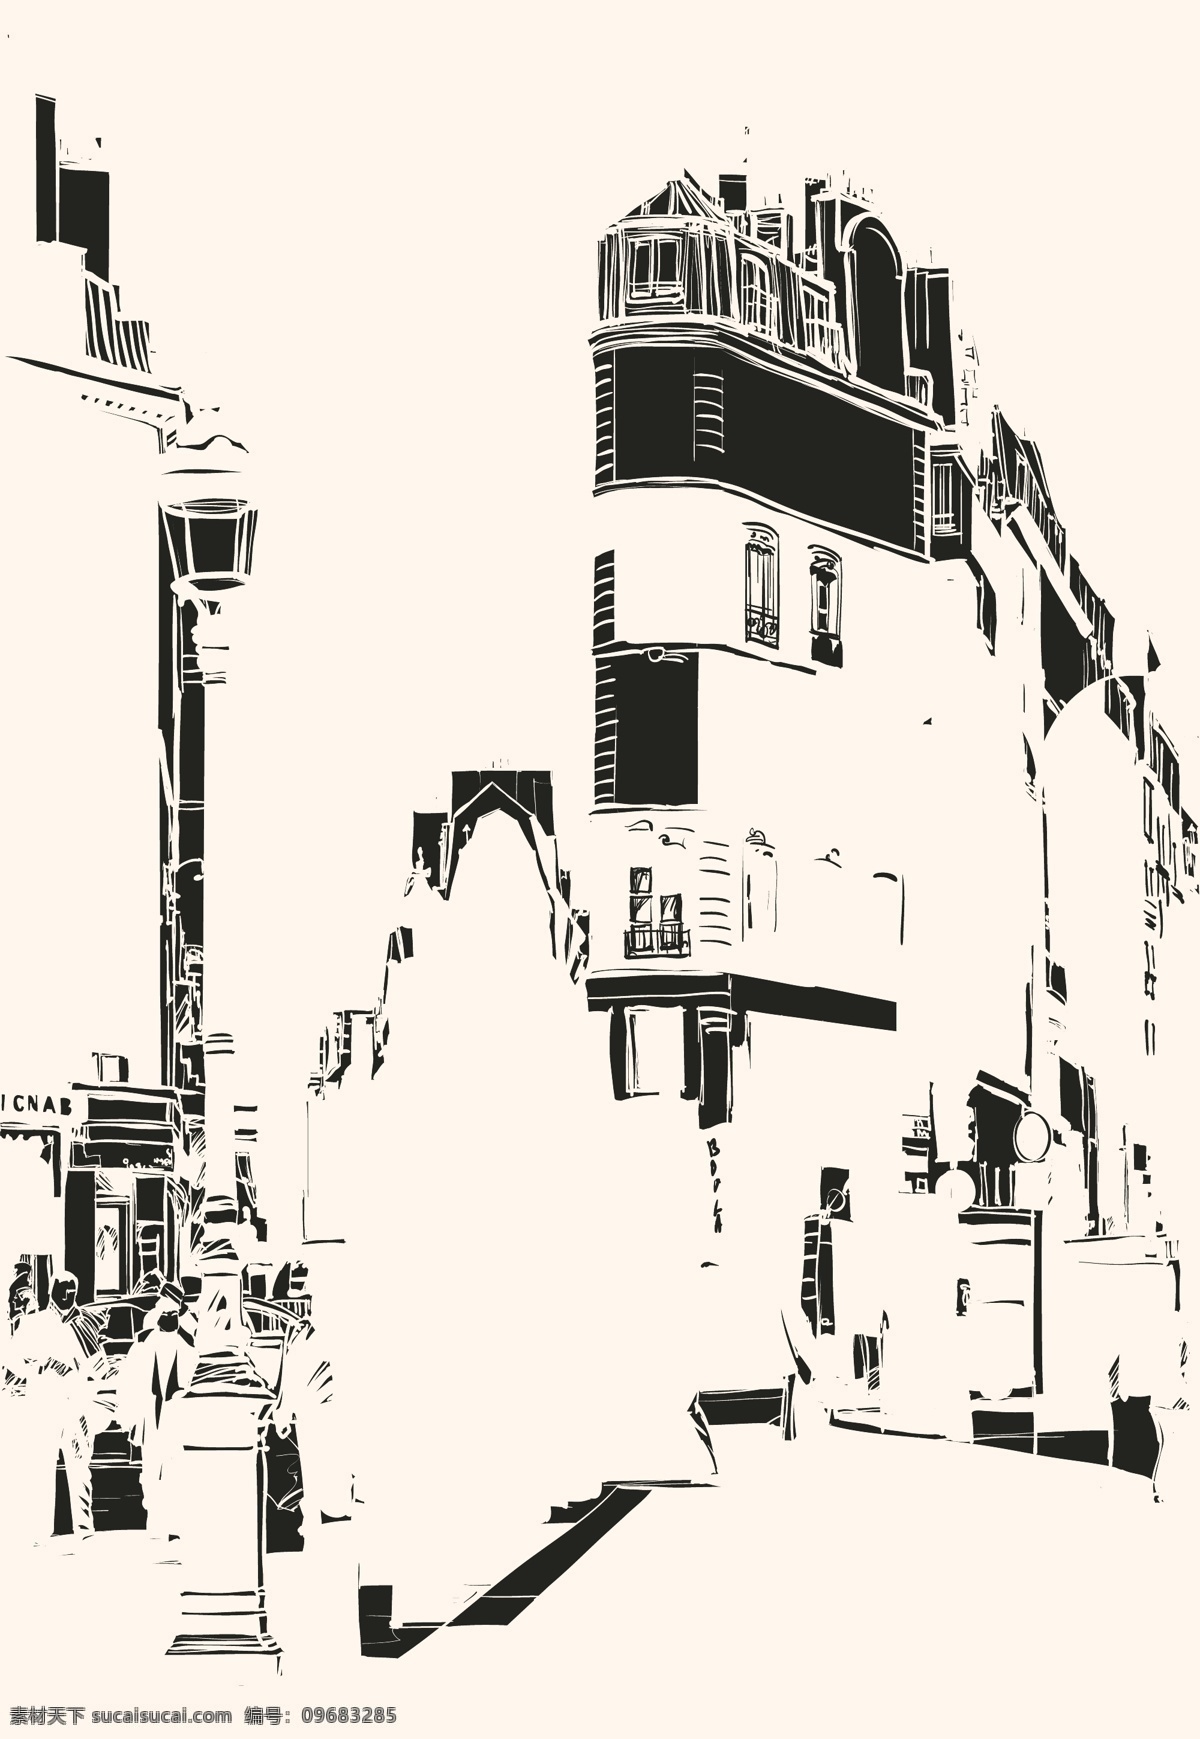 黑白 手绘 欧洲 街道 插画 城市 房子 建筑